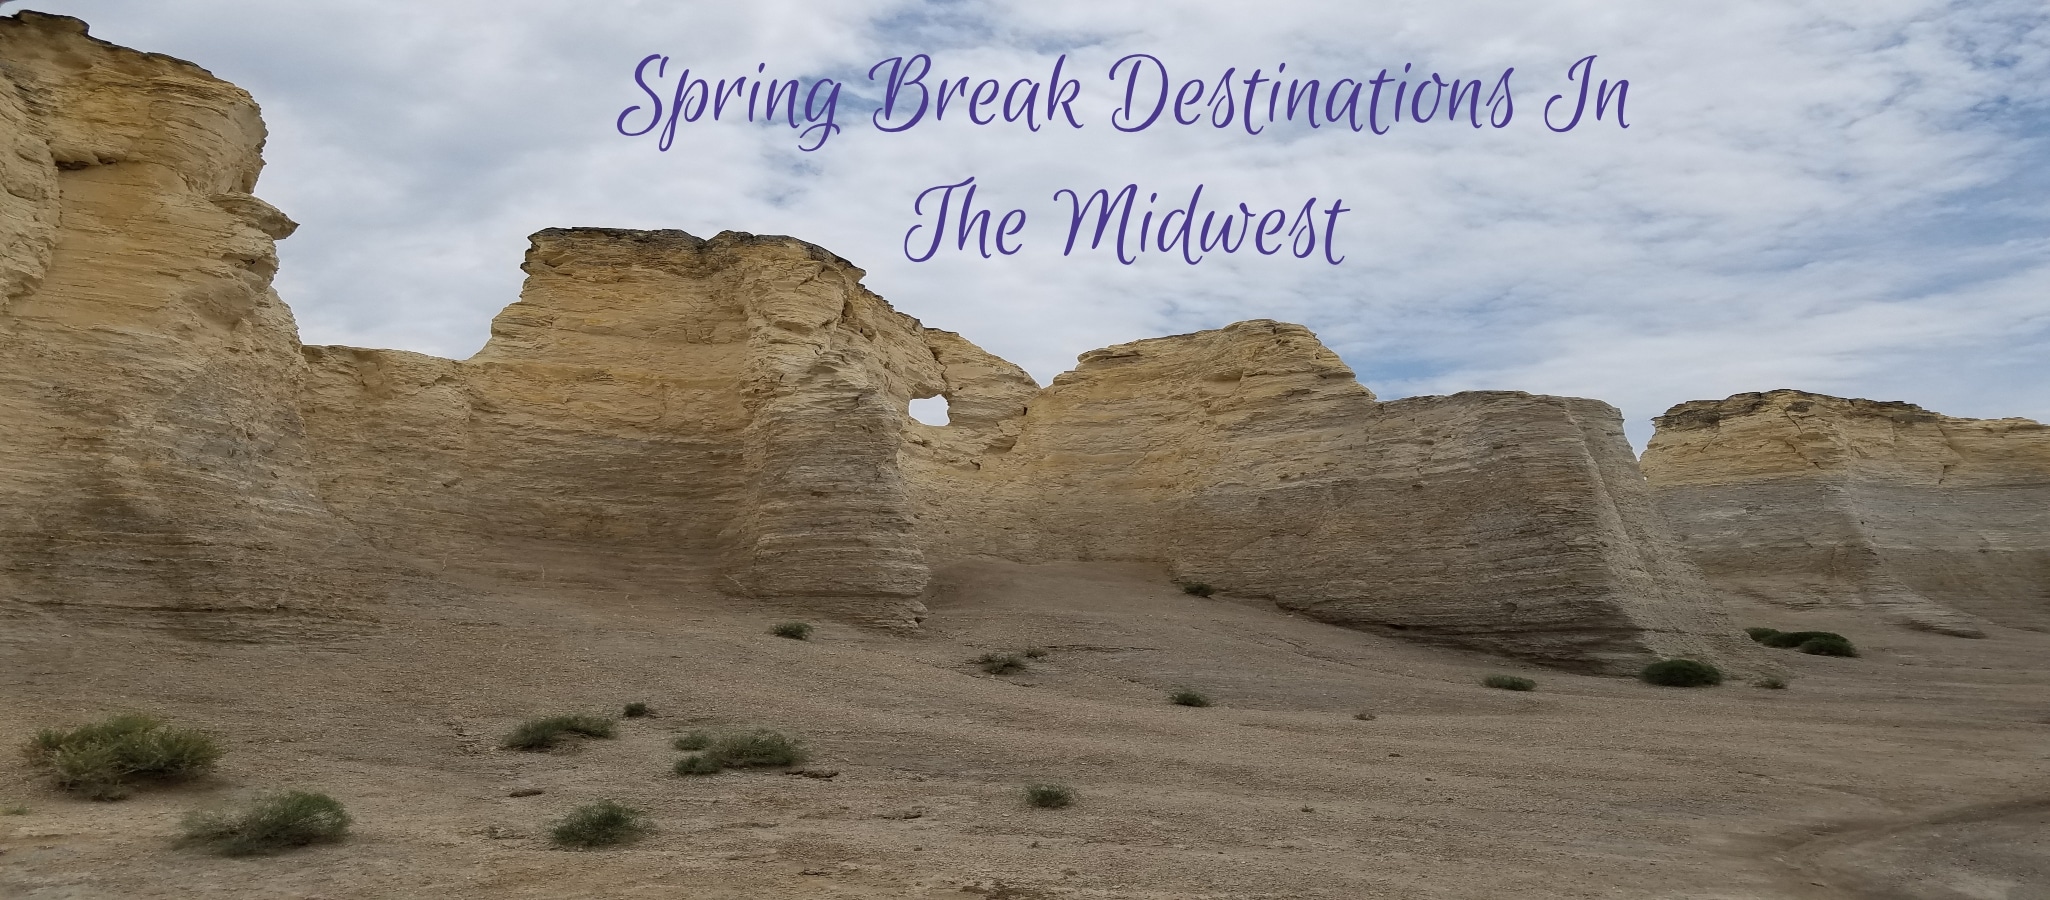 Spring break ideas in midwest